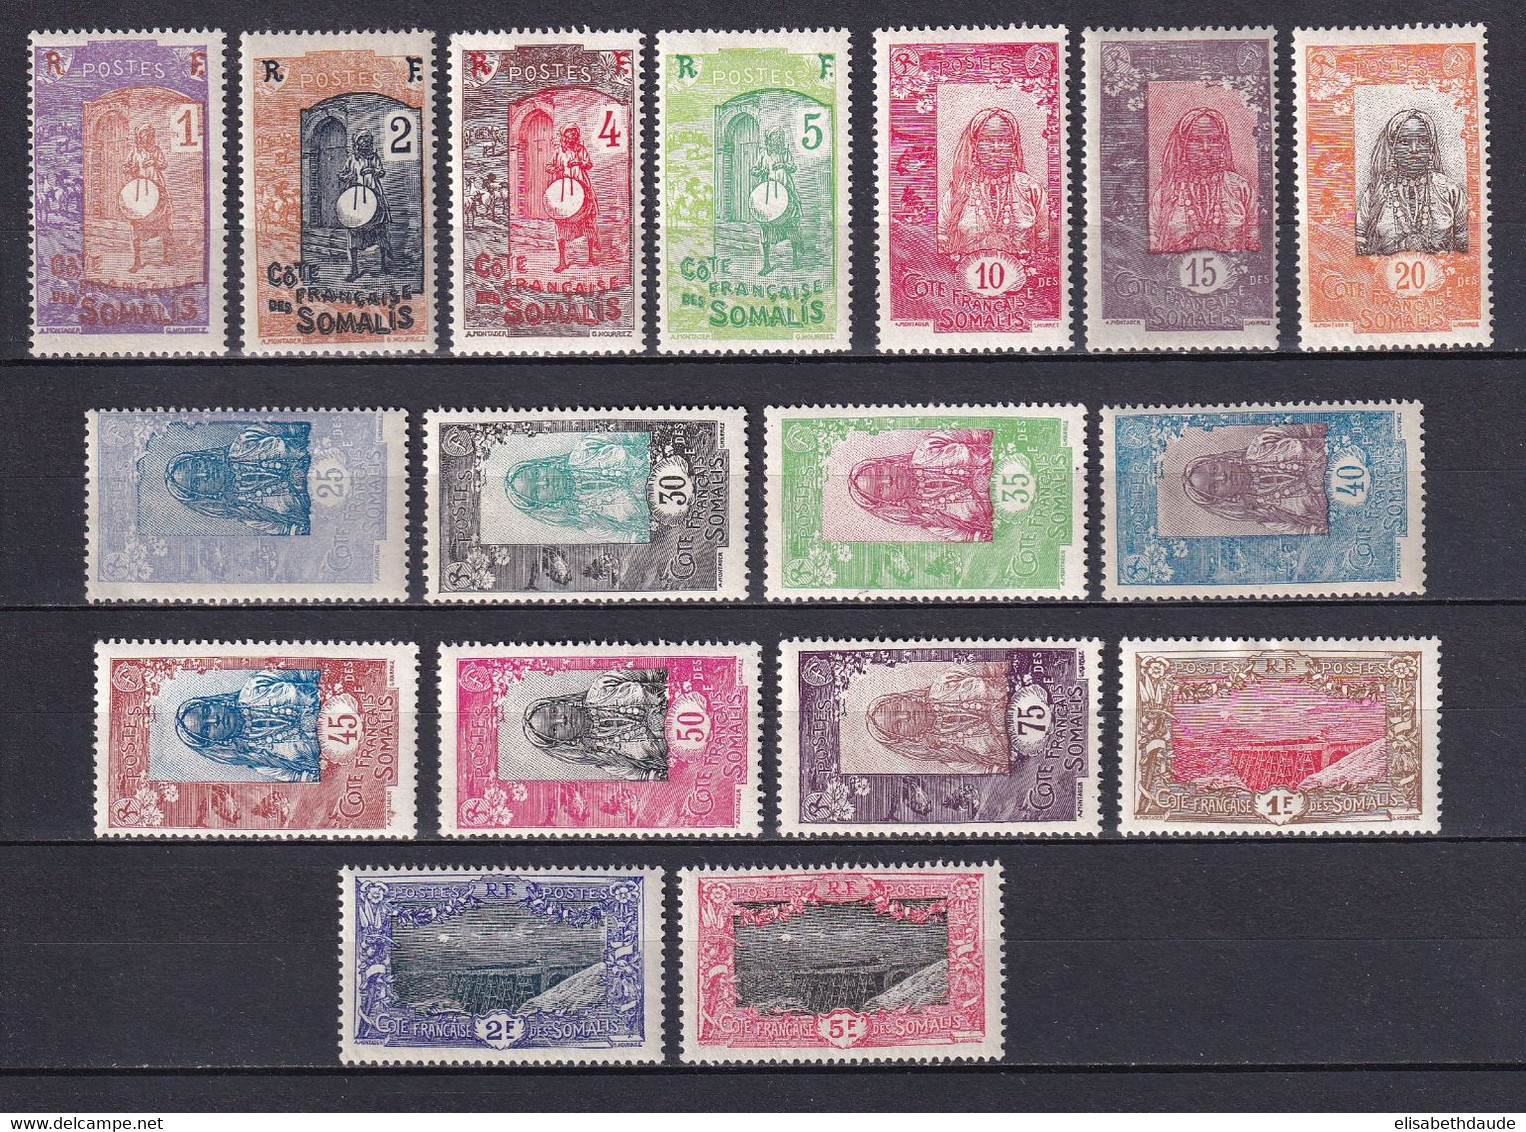 COTE DES SOMALIS - 1915 - SERIE COMPLETE YVERT N° 83/99 * MLH - COTE 2020 = 54 EUR. - Unused Stamps